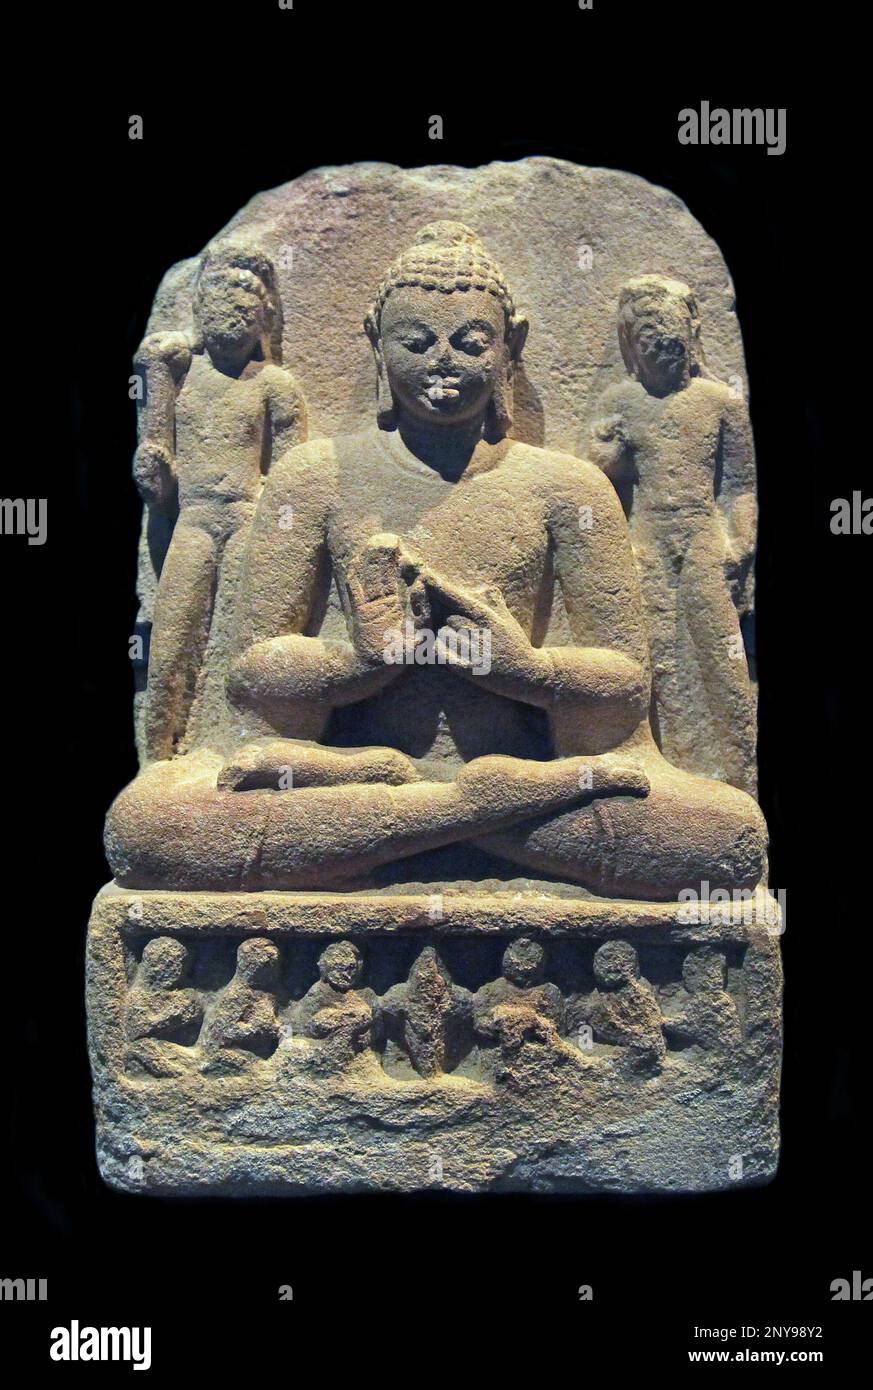 Die erste Predigt des Buddha.Cupta India 400-600.Sandstein.Vajrasana Position.zwei Bodhisattvas stehen hinter dem Buddha.Cupta Imperium;4.-6. Jahrhundert. Stockfoto